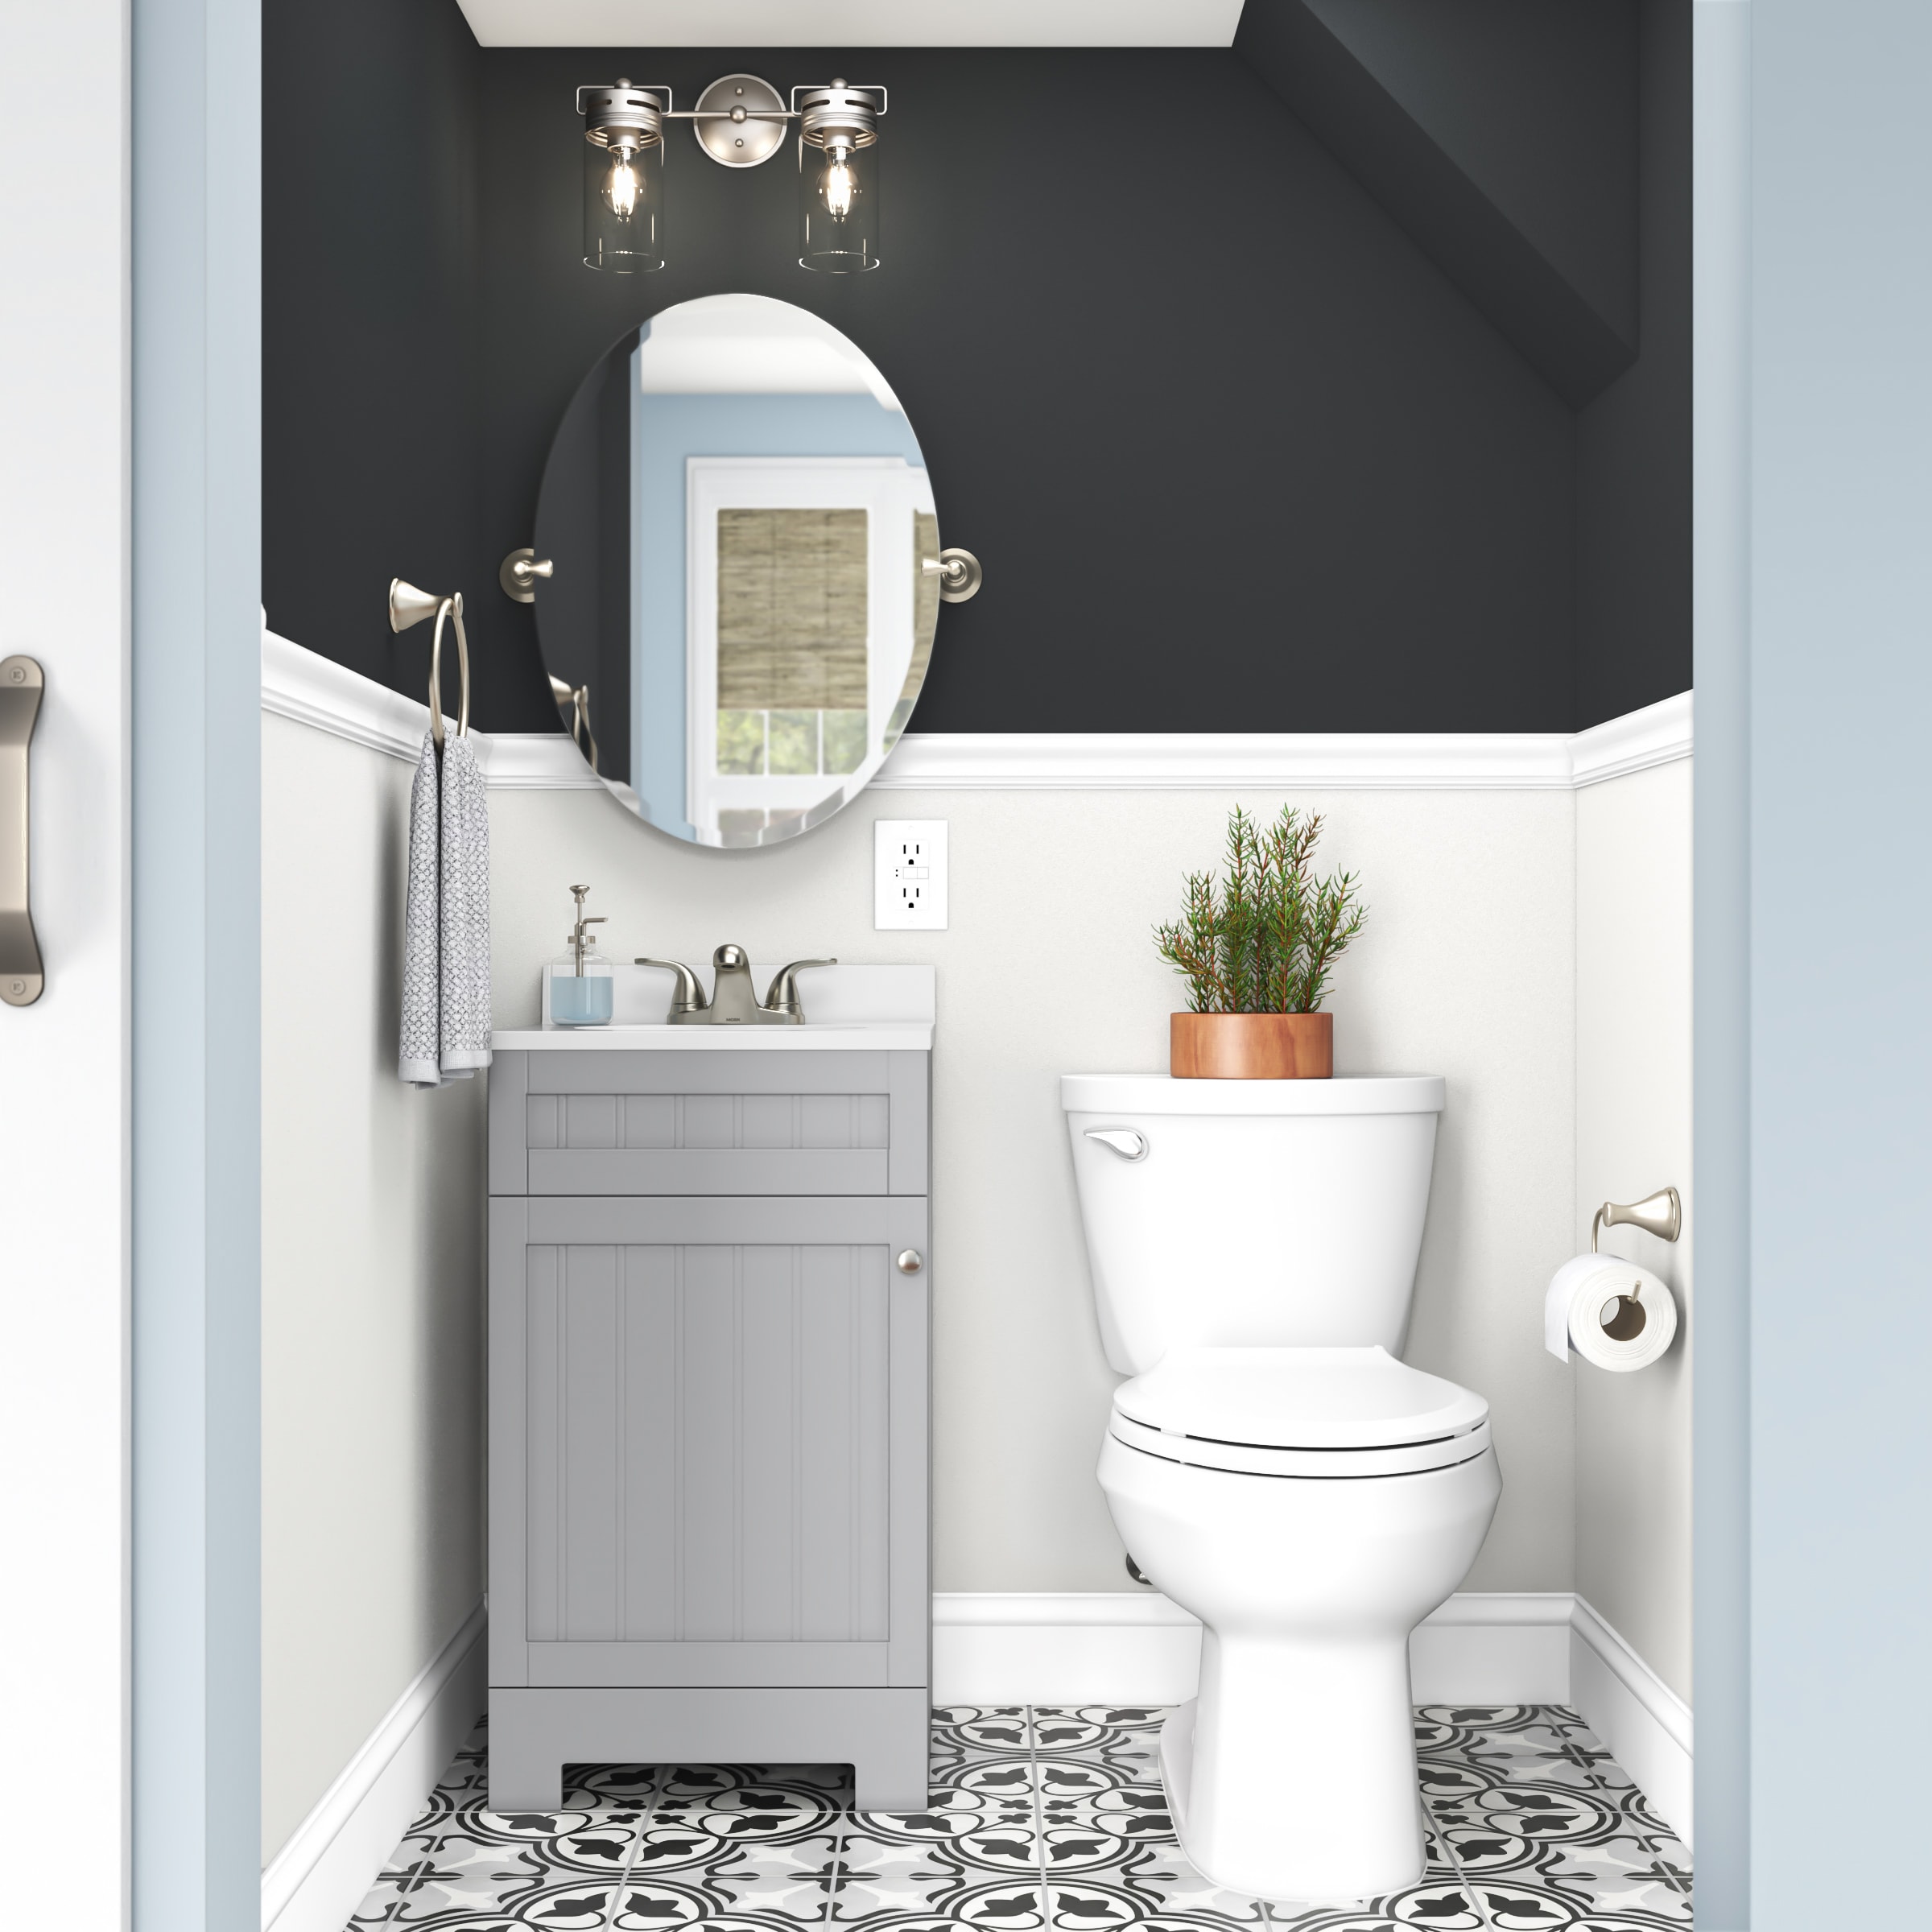 Moen Sage 22.79-in x 26-in Brushed Nickel Oval Frameless Bathroom Vanity  Mirror in the Bathroom Mirrors department at